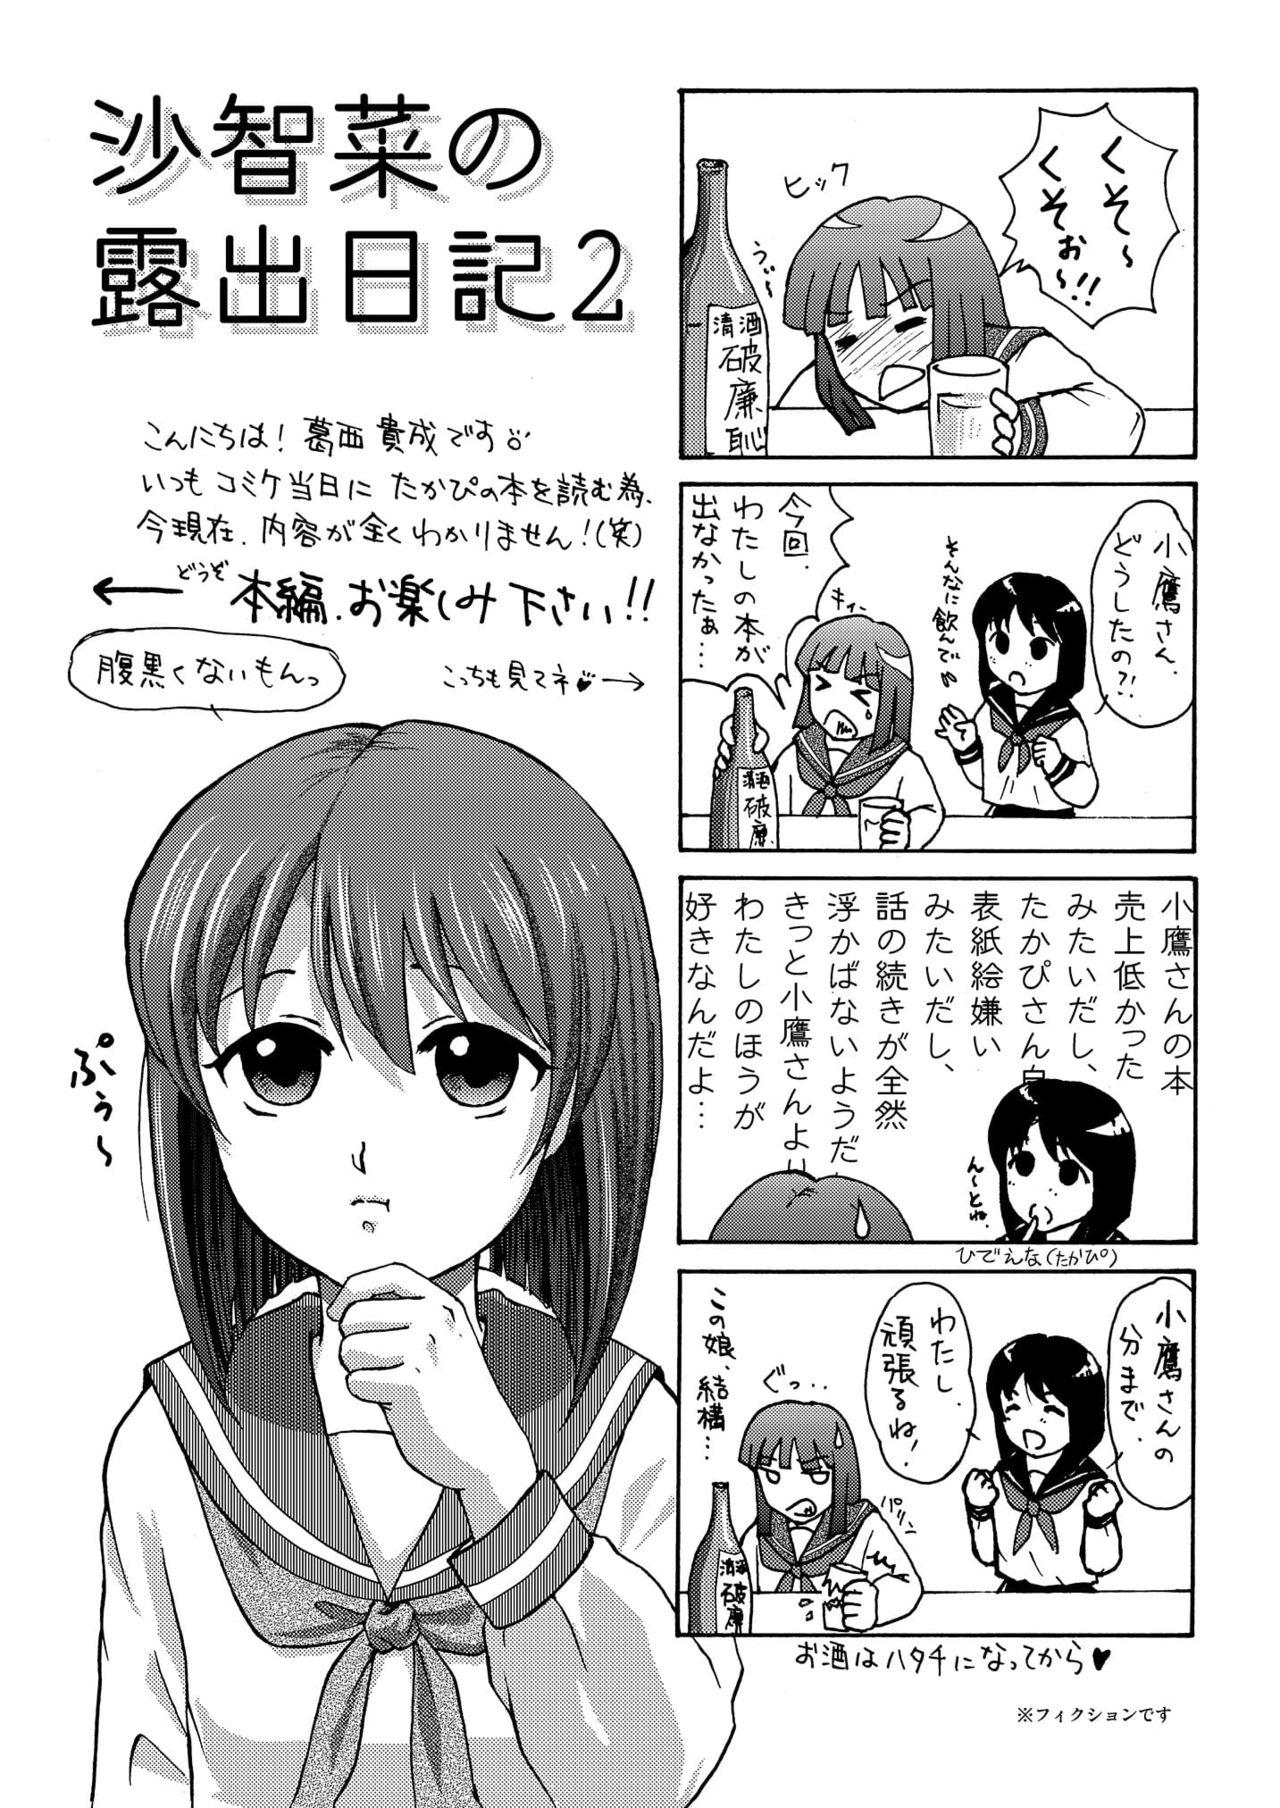 Sachina no Roshutsu Nikki 2 - Sachina's Public diary 2 2